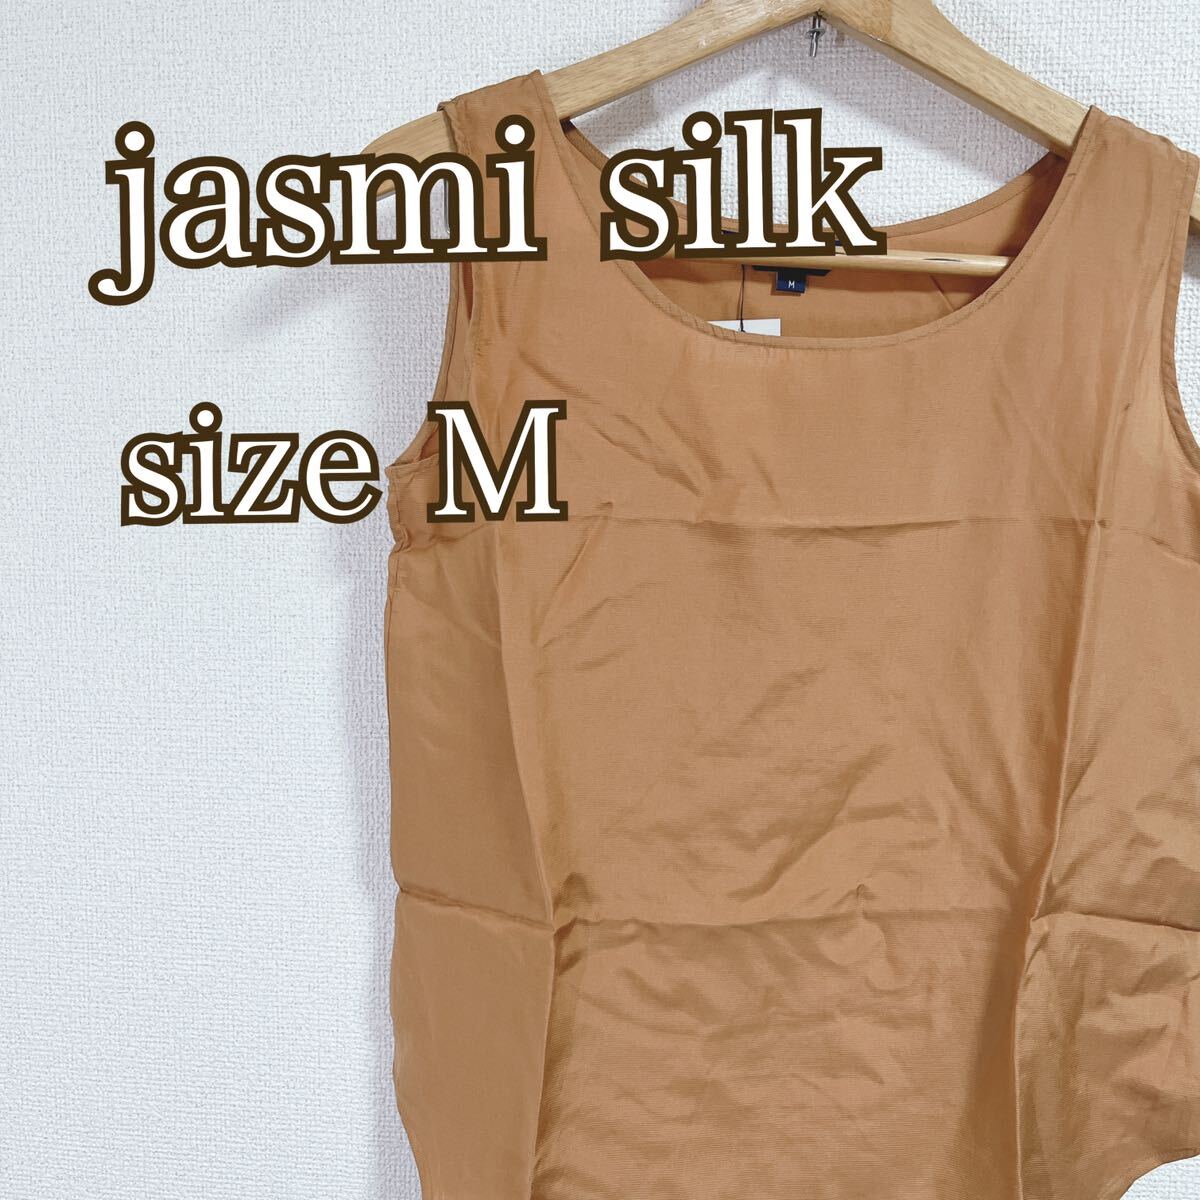 jasmi silk ノースリーブ トップス シルク ブラウス おしゃれ Mの画像1